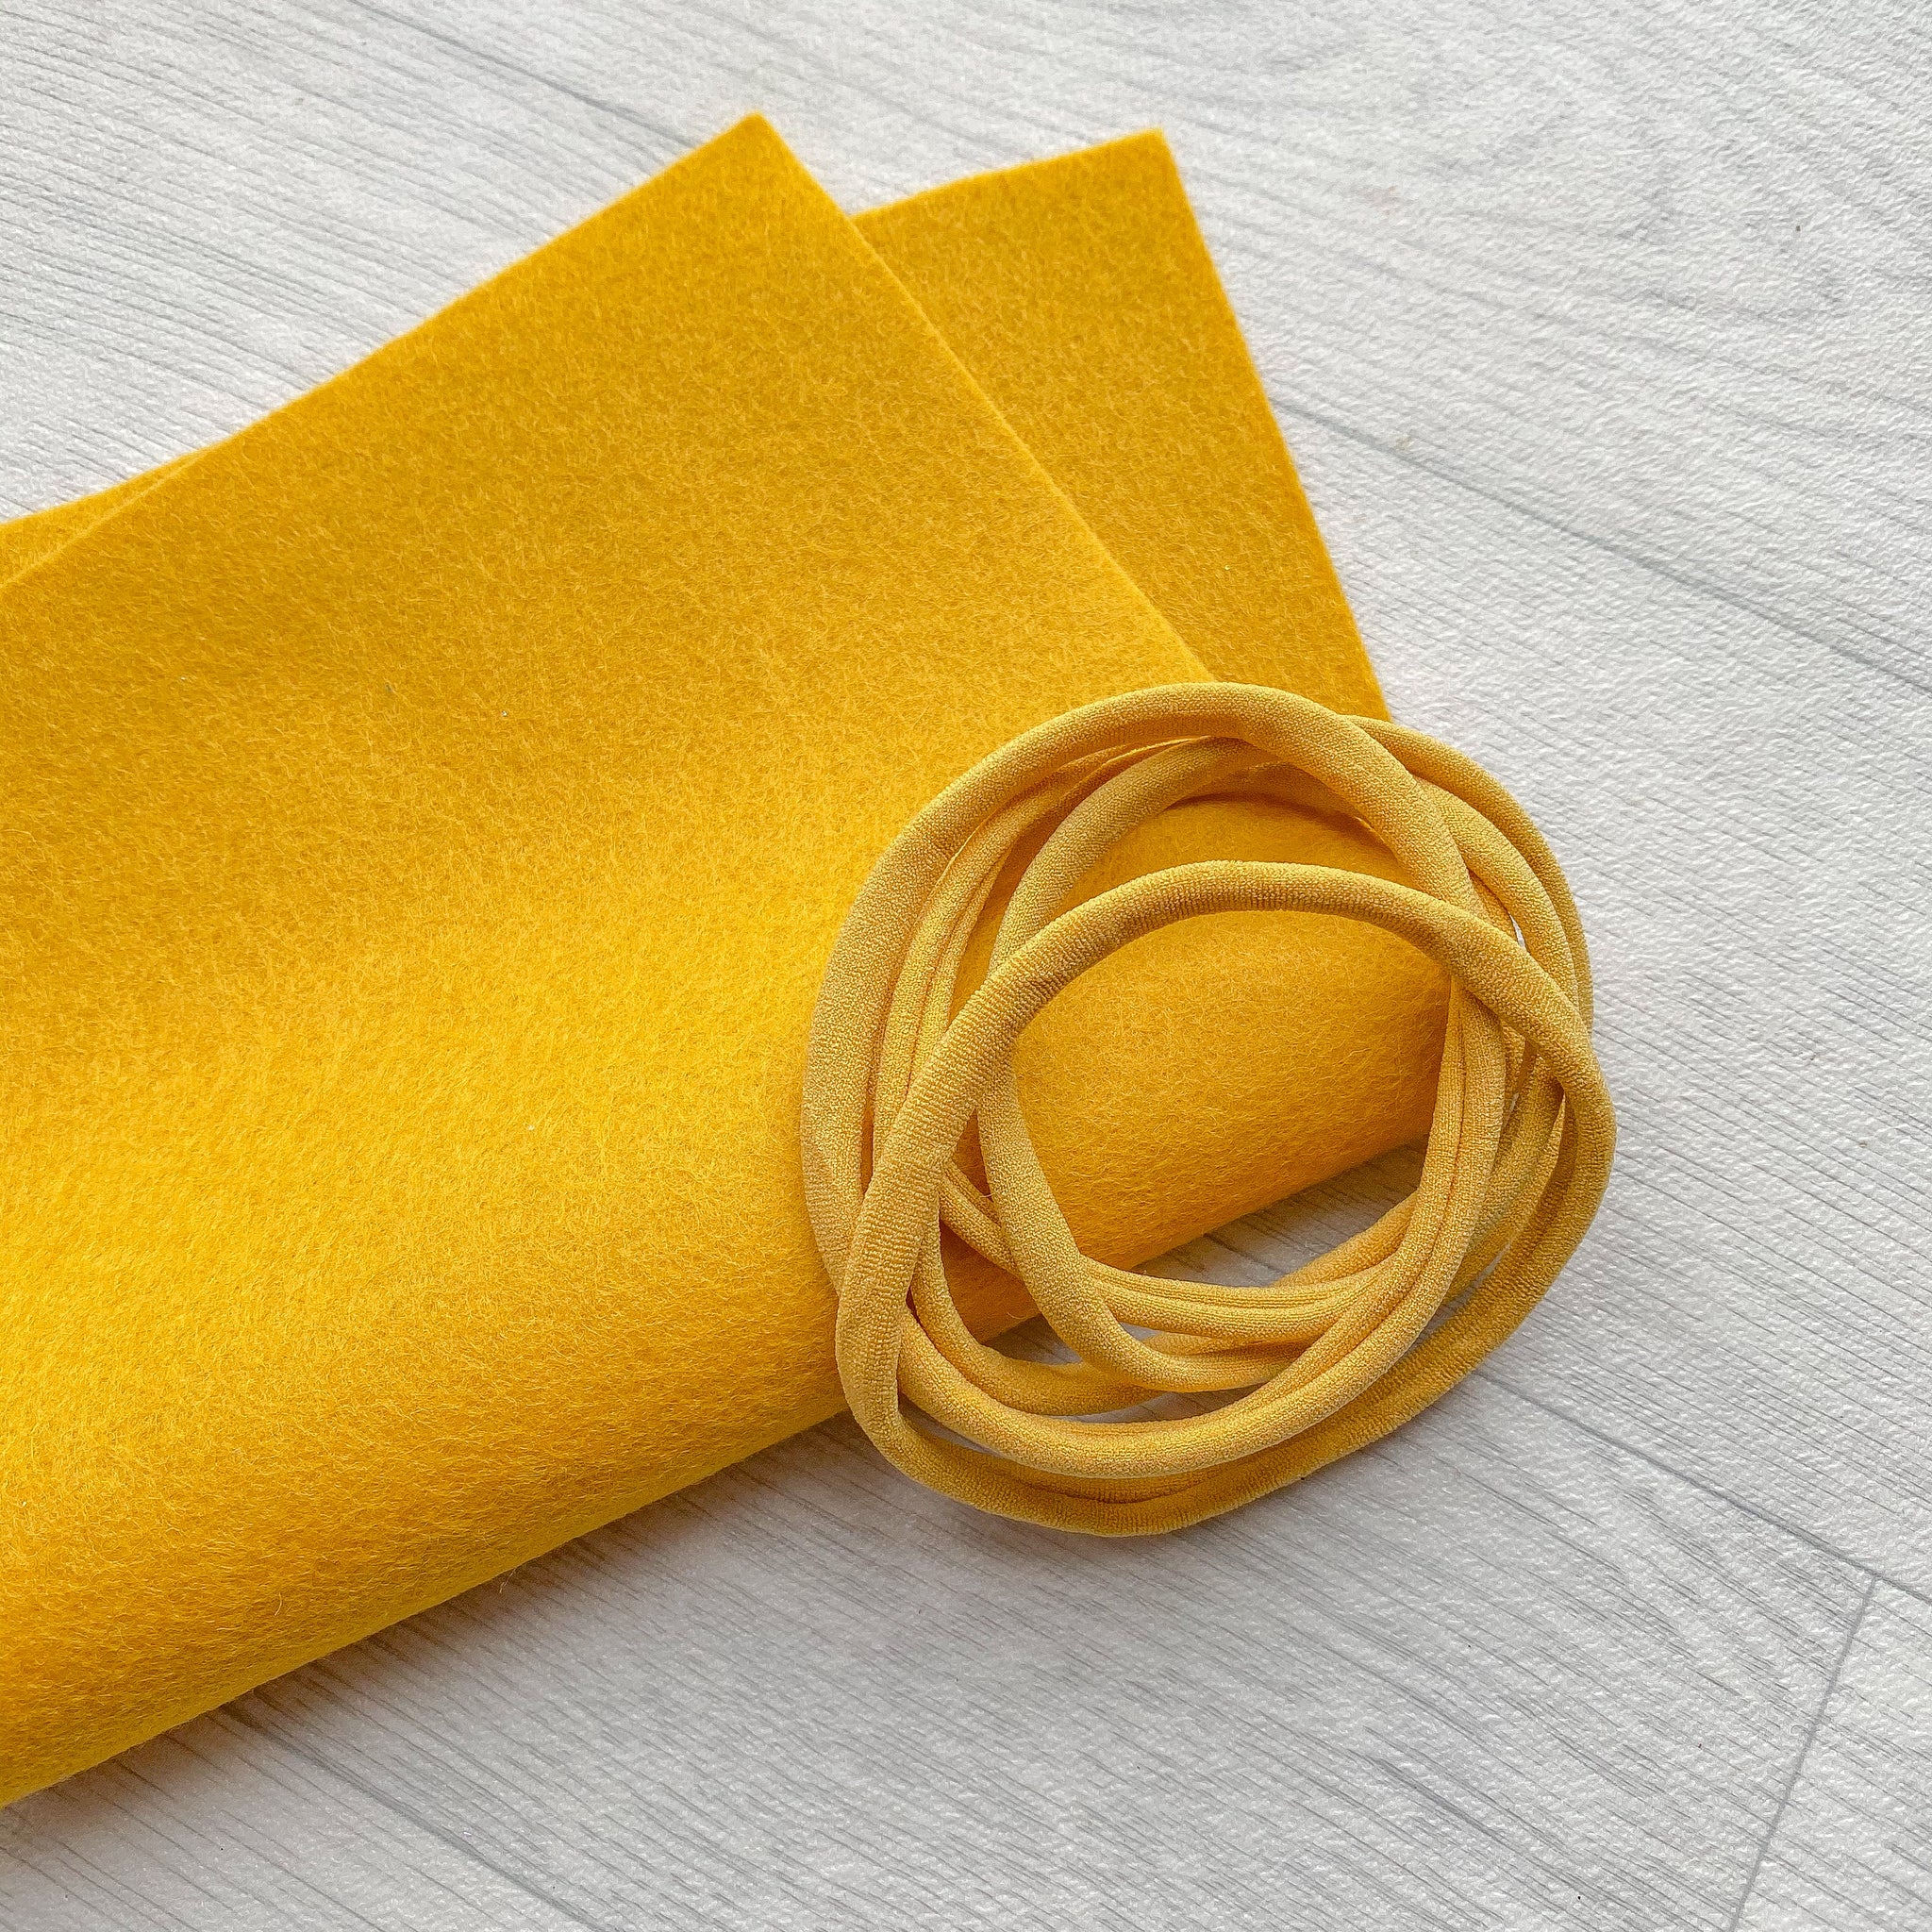 Mustard 100% Merino Wool Felt 1 sheet With 5 Mustard Nylon Headbands